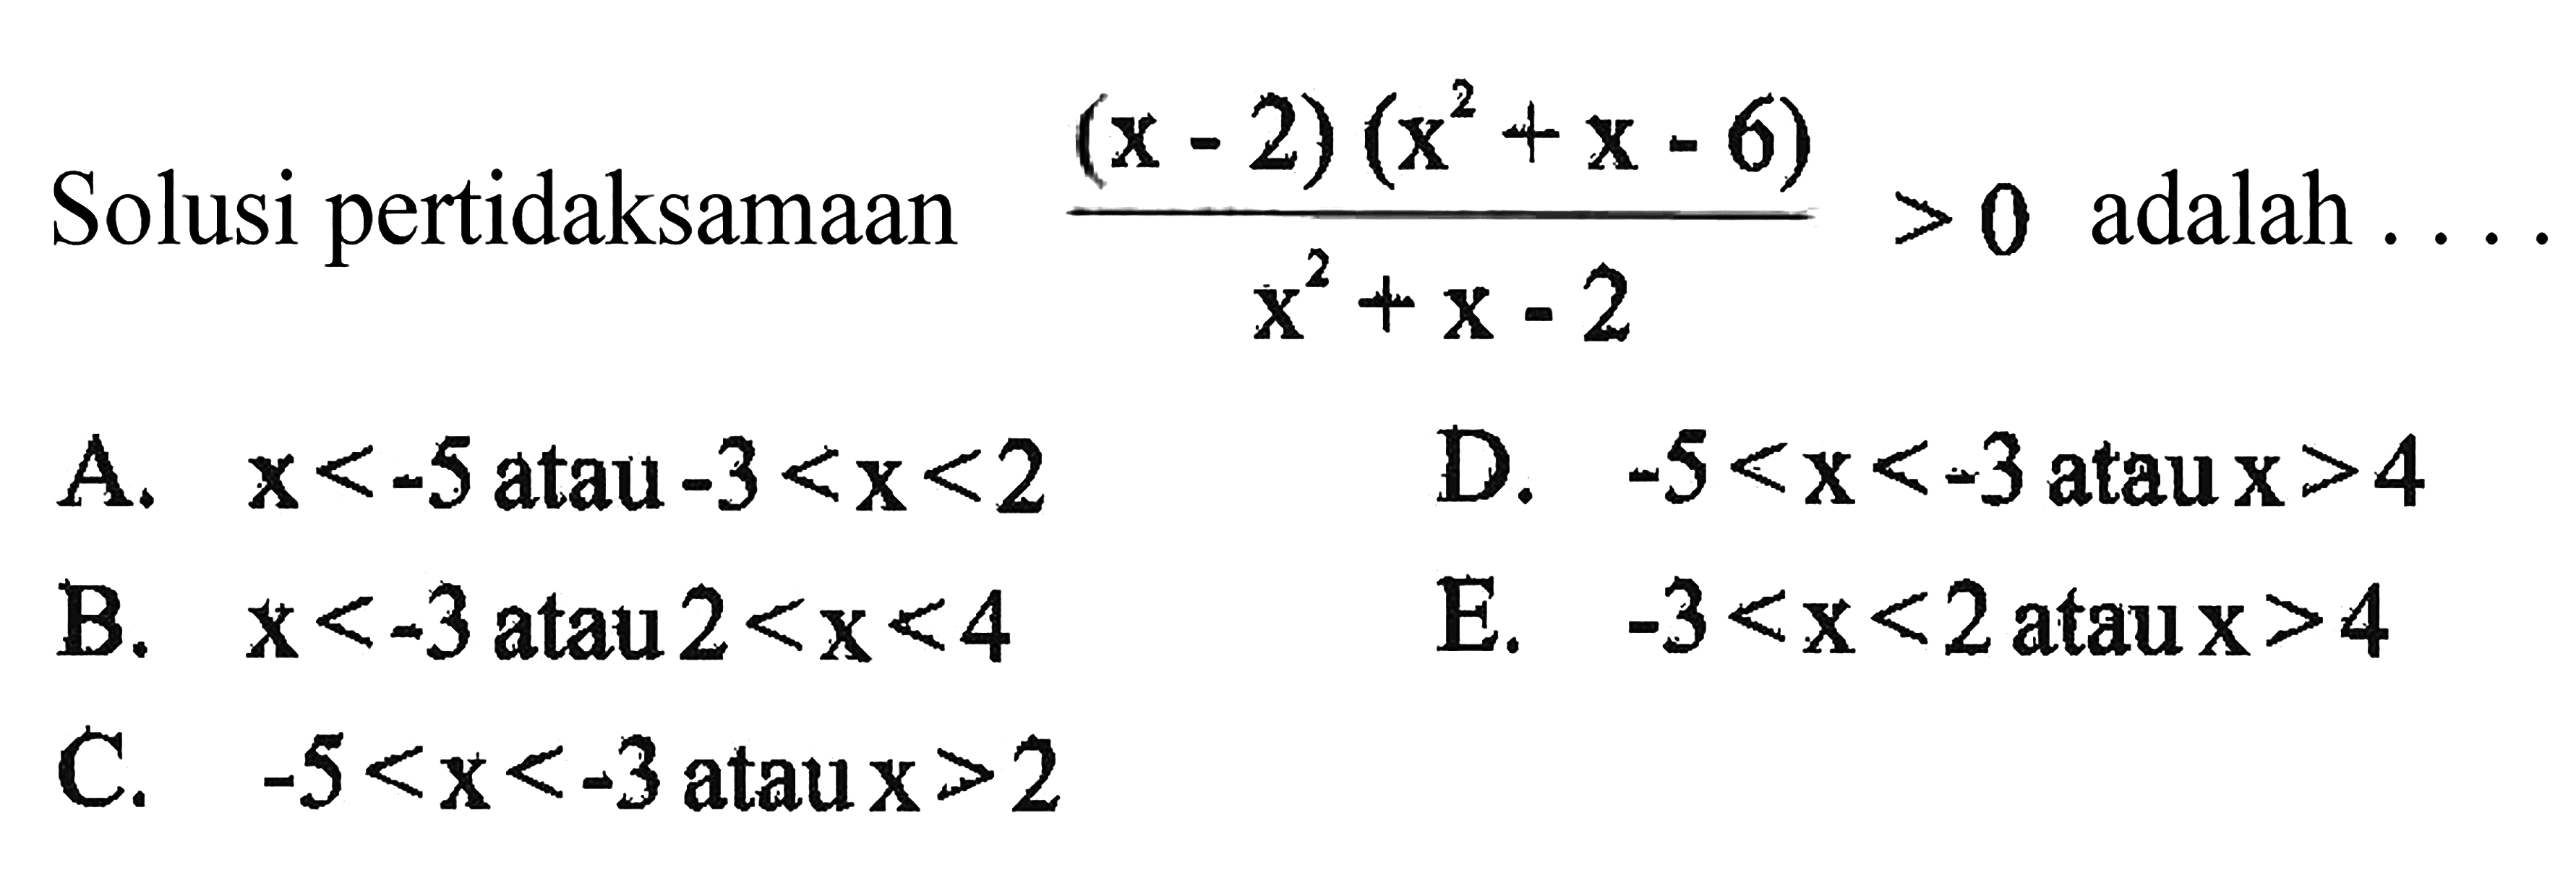 Solusi pertidaksamaan (x-2)(x^2+x-6) / x^2+x-2 adalah ....